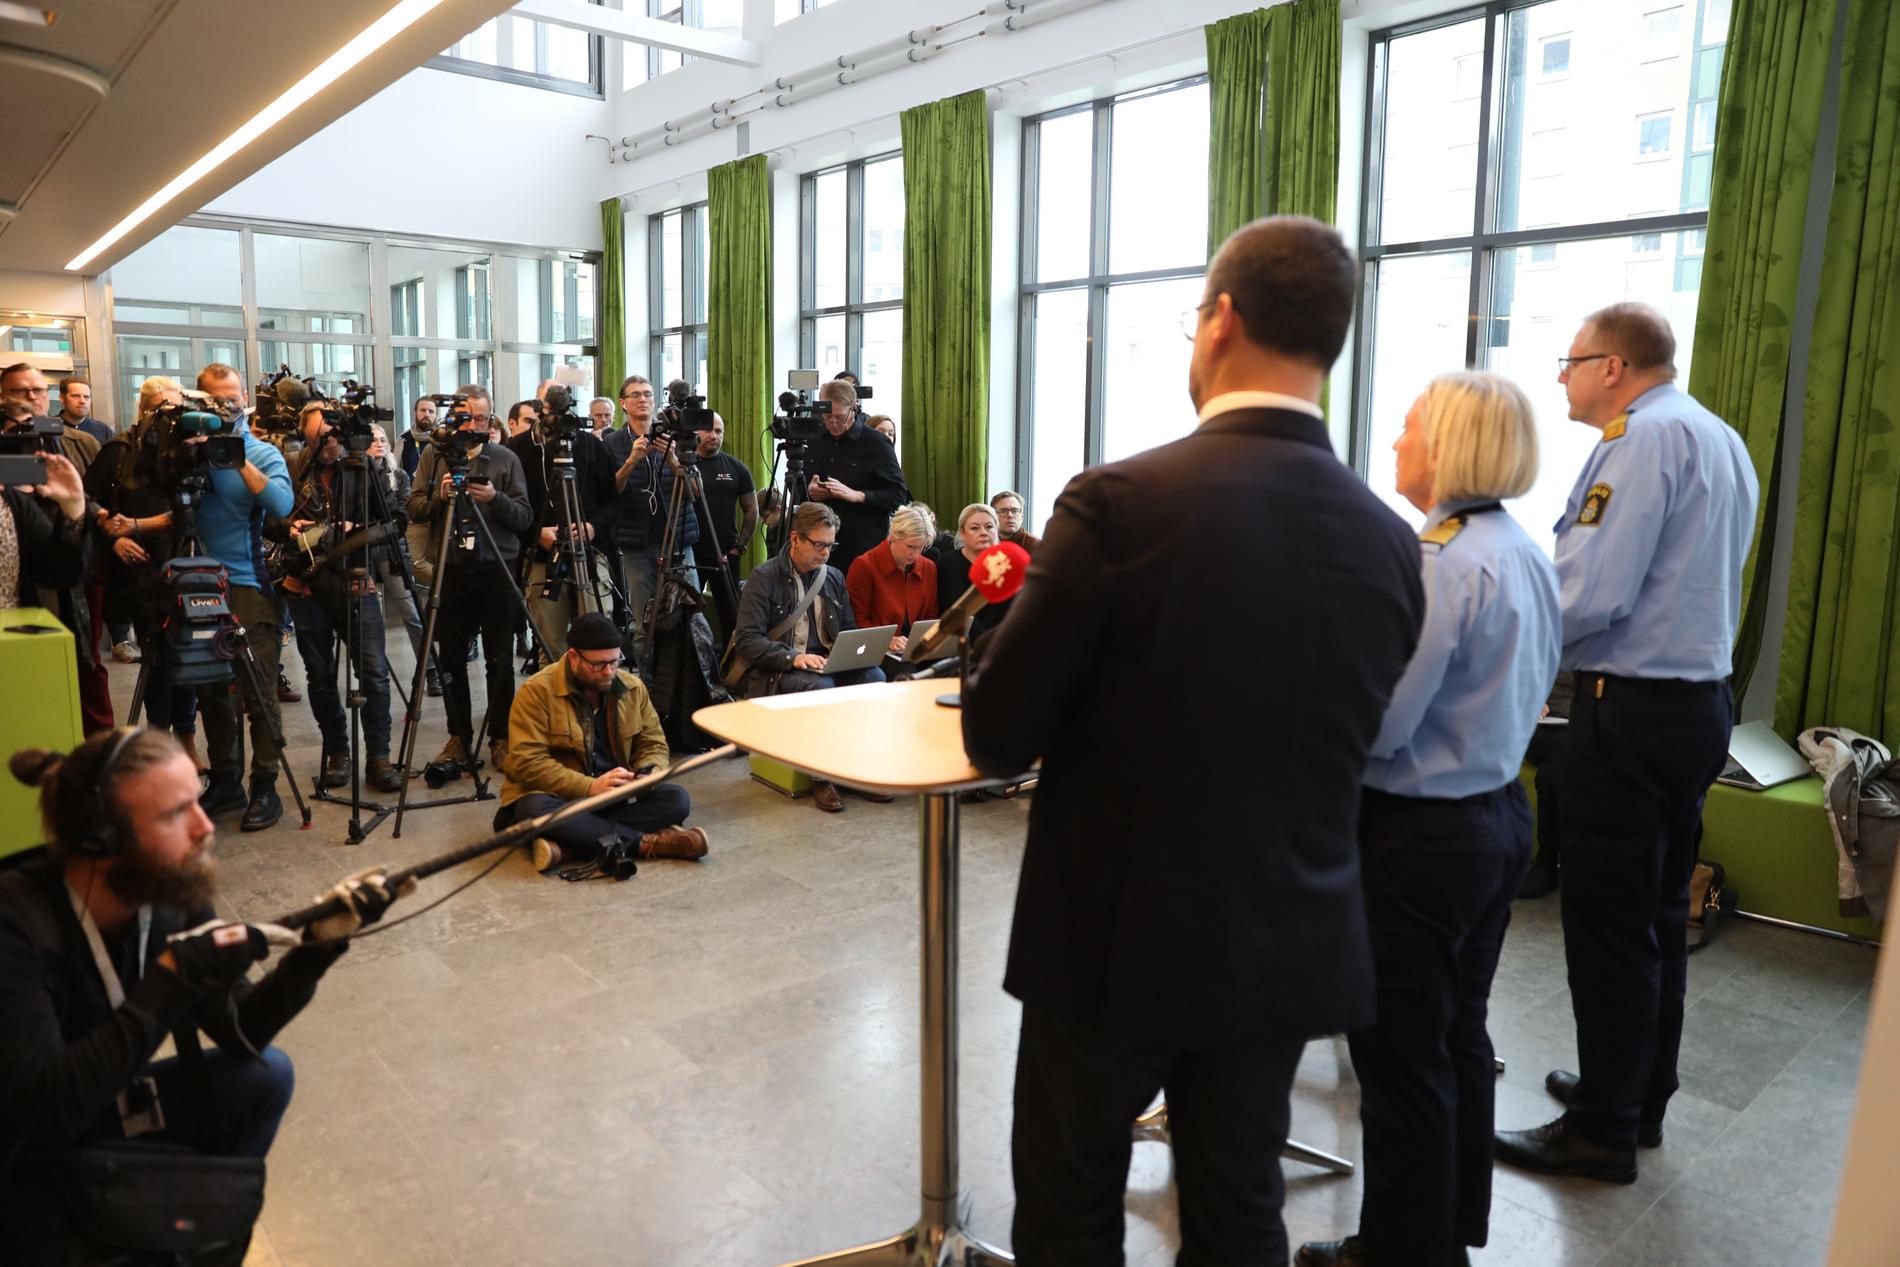 Malmöpolisen håller pressträff efter mordet på Jaffar, 15